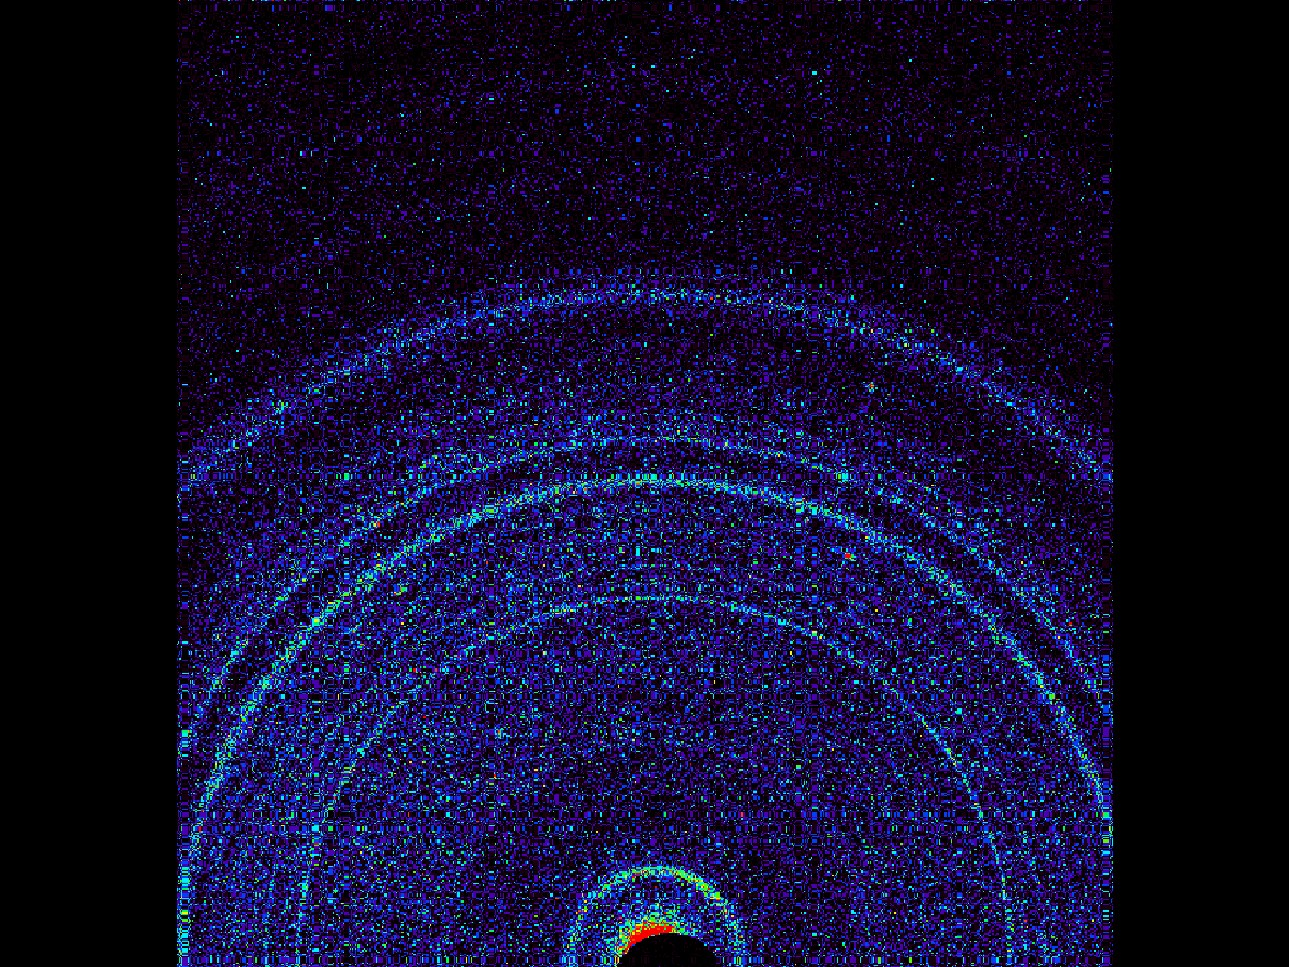 Első marsi pordiffraktogram (Curiosity-2012): (bazalt)por: földpát, piroxén, olivin